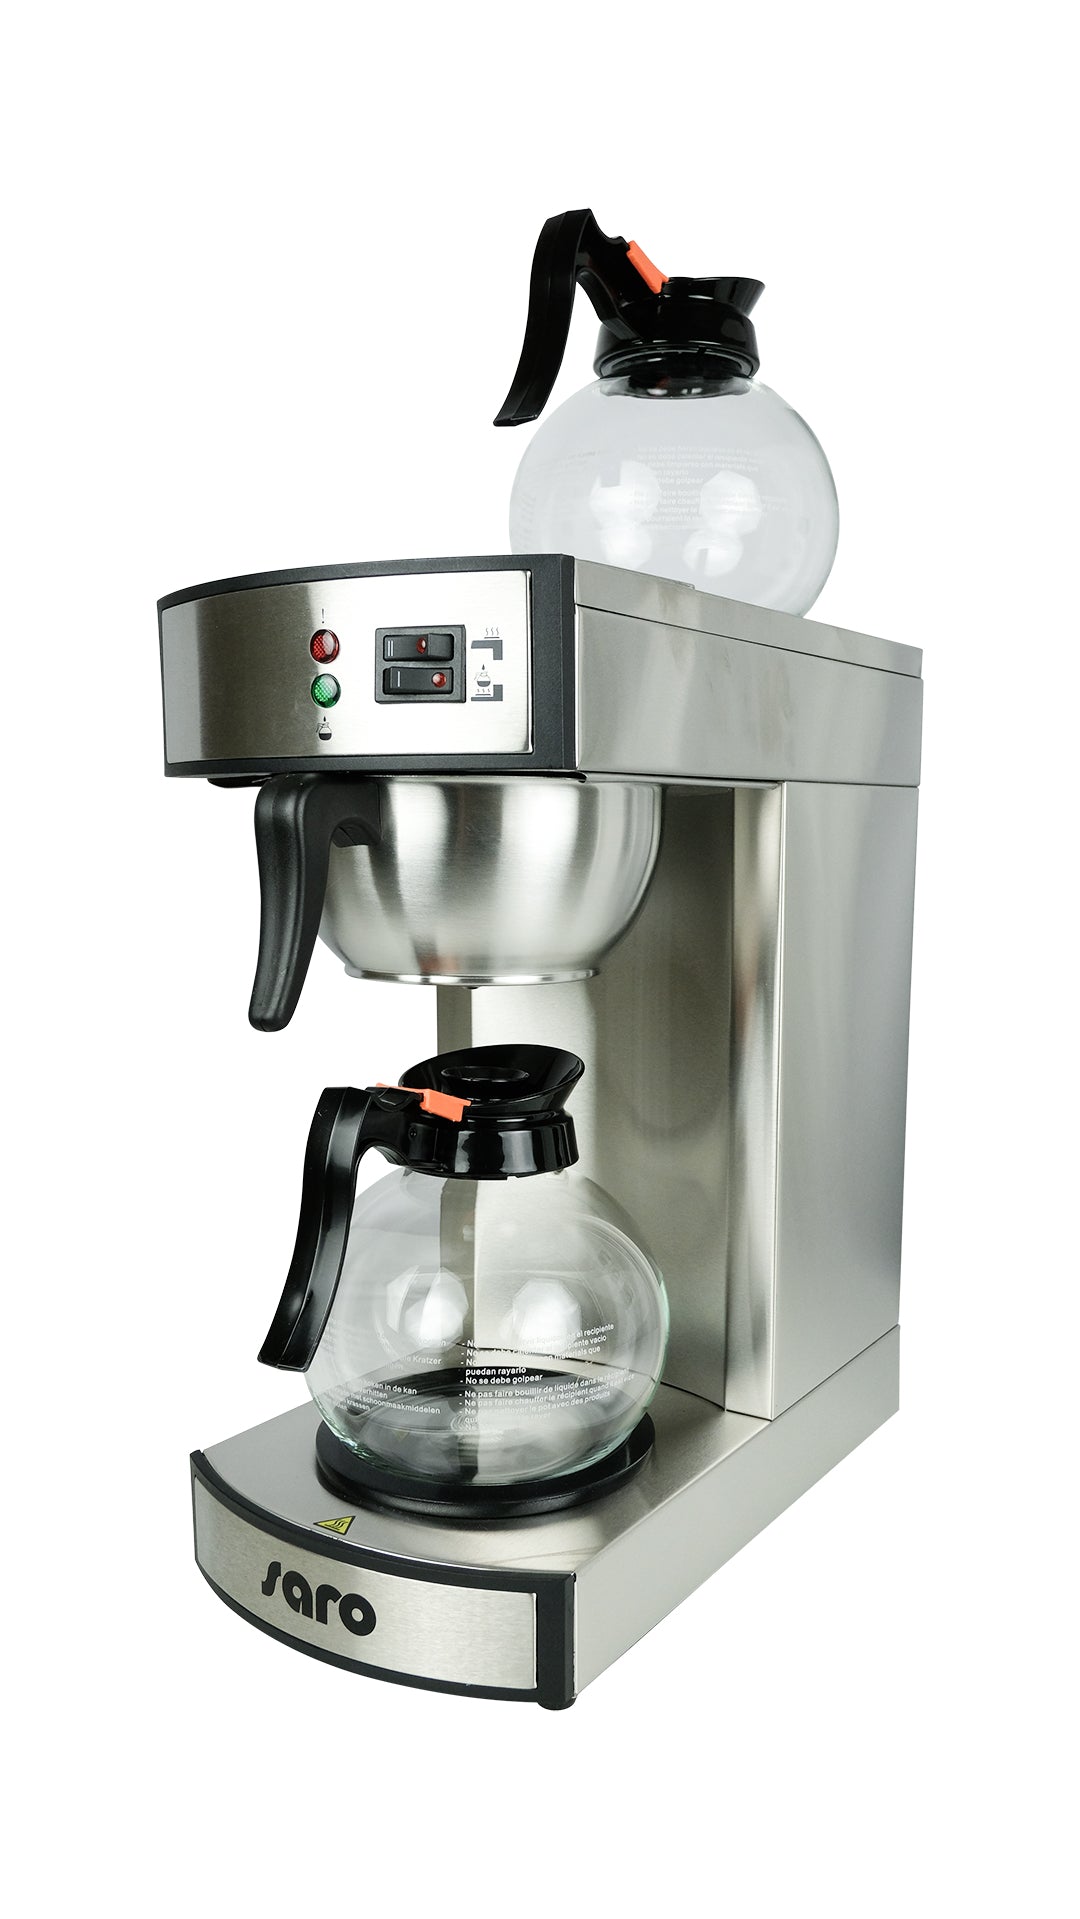 SARO Kaffemaskine model MICA K 24 T